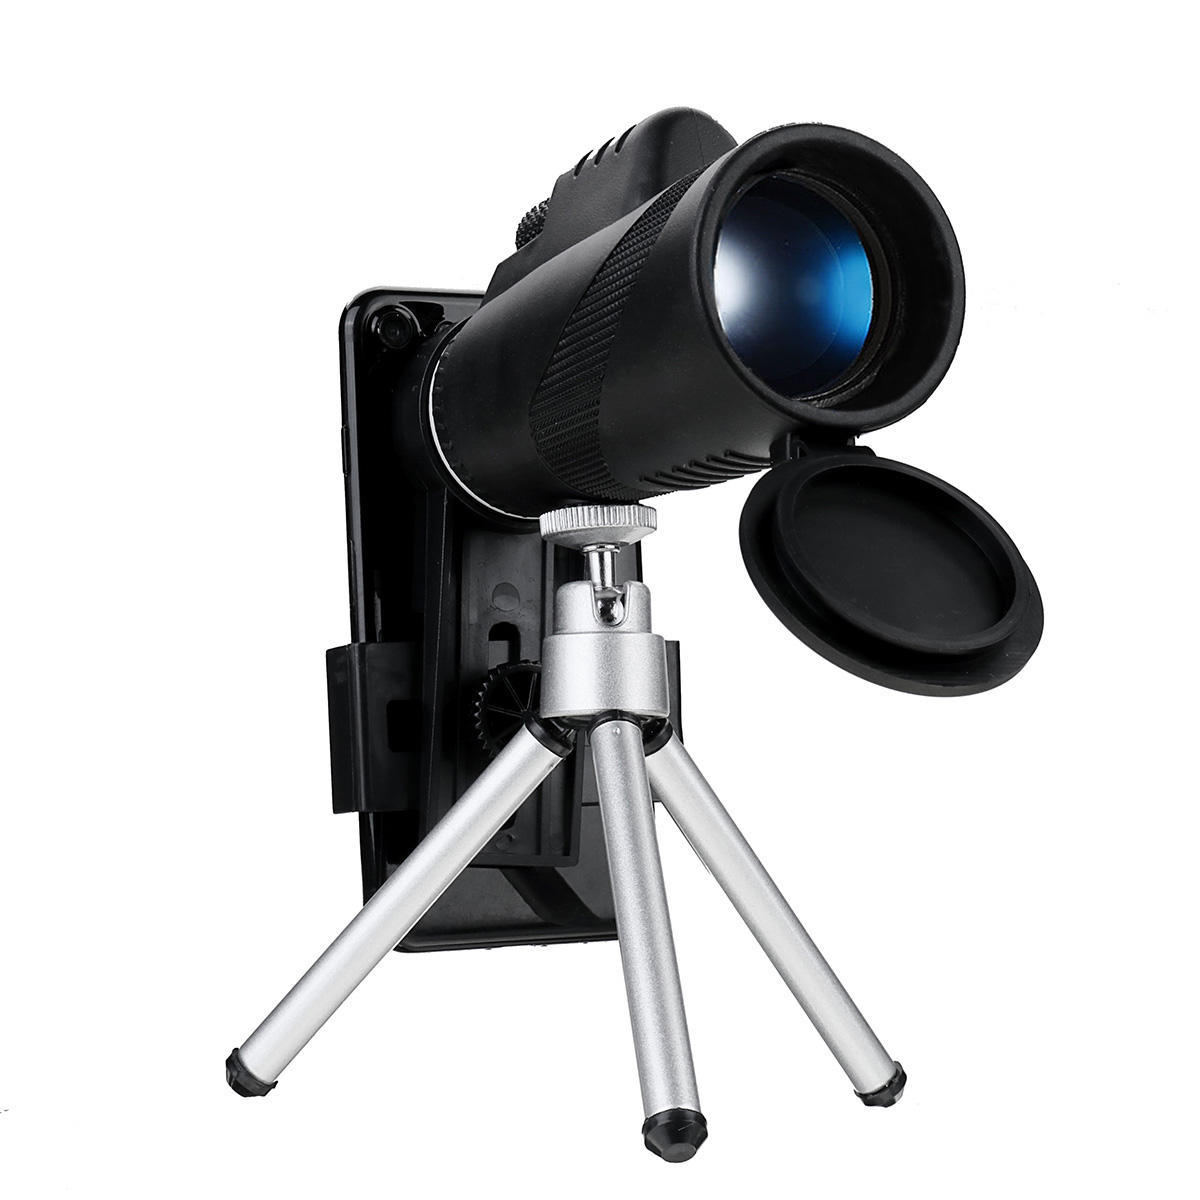 IPRee® 40X60 أحادي العين عالي الوضوح البصري للرؤية الليلية تلسكوب مع هاتف كليب ترايبود التخييم في الهواء الطلق السفر